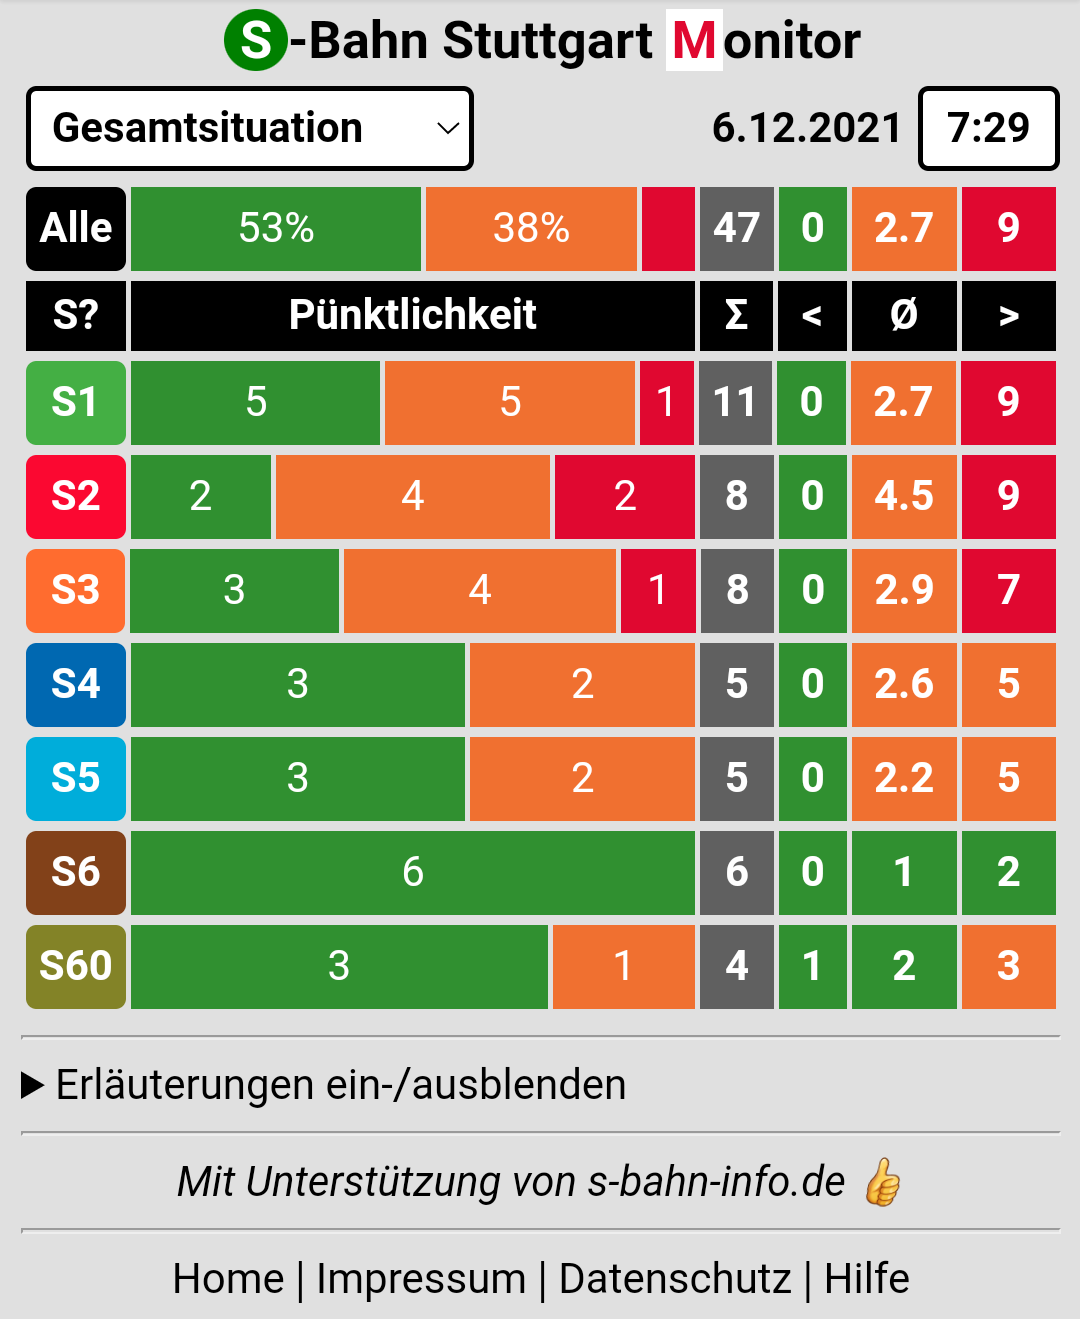 Startseite des S-Bahn-Stuttgart Monitors